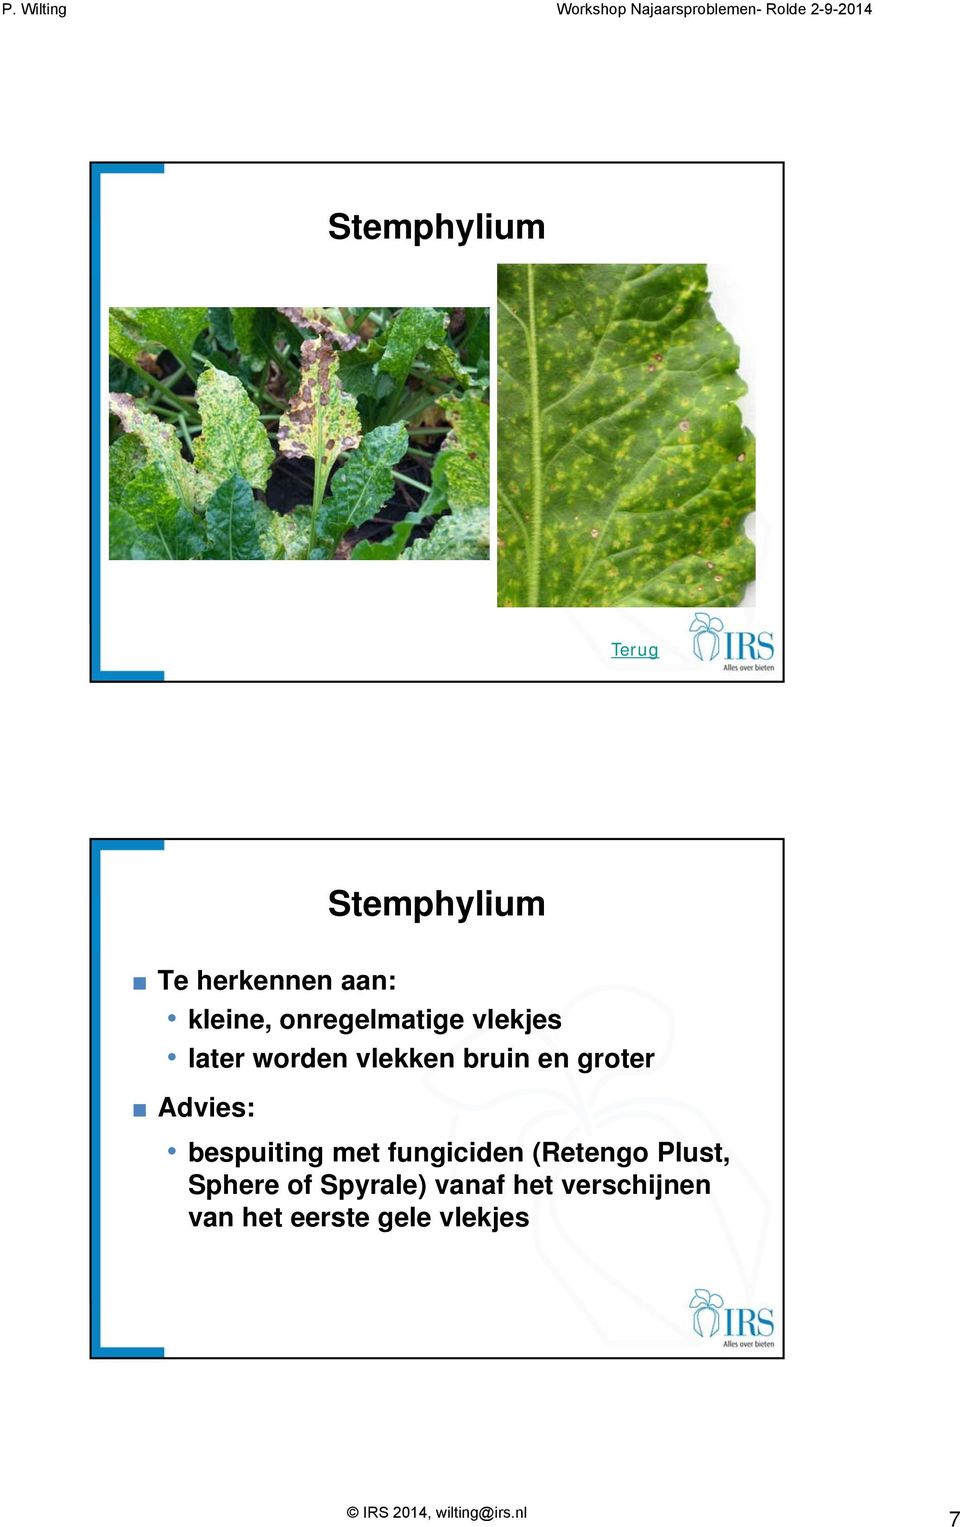 bespuiting met fungiciden (Retengo Plust, Sphere